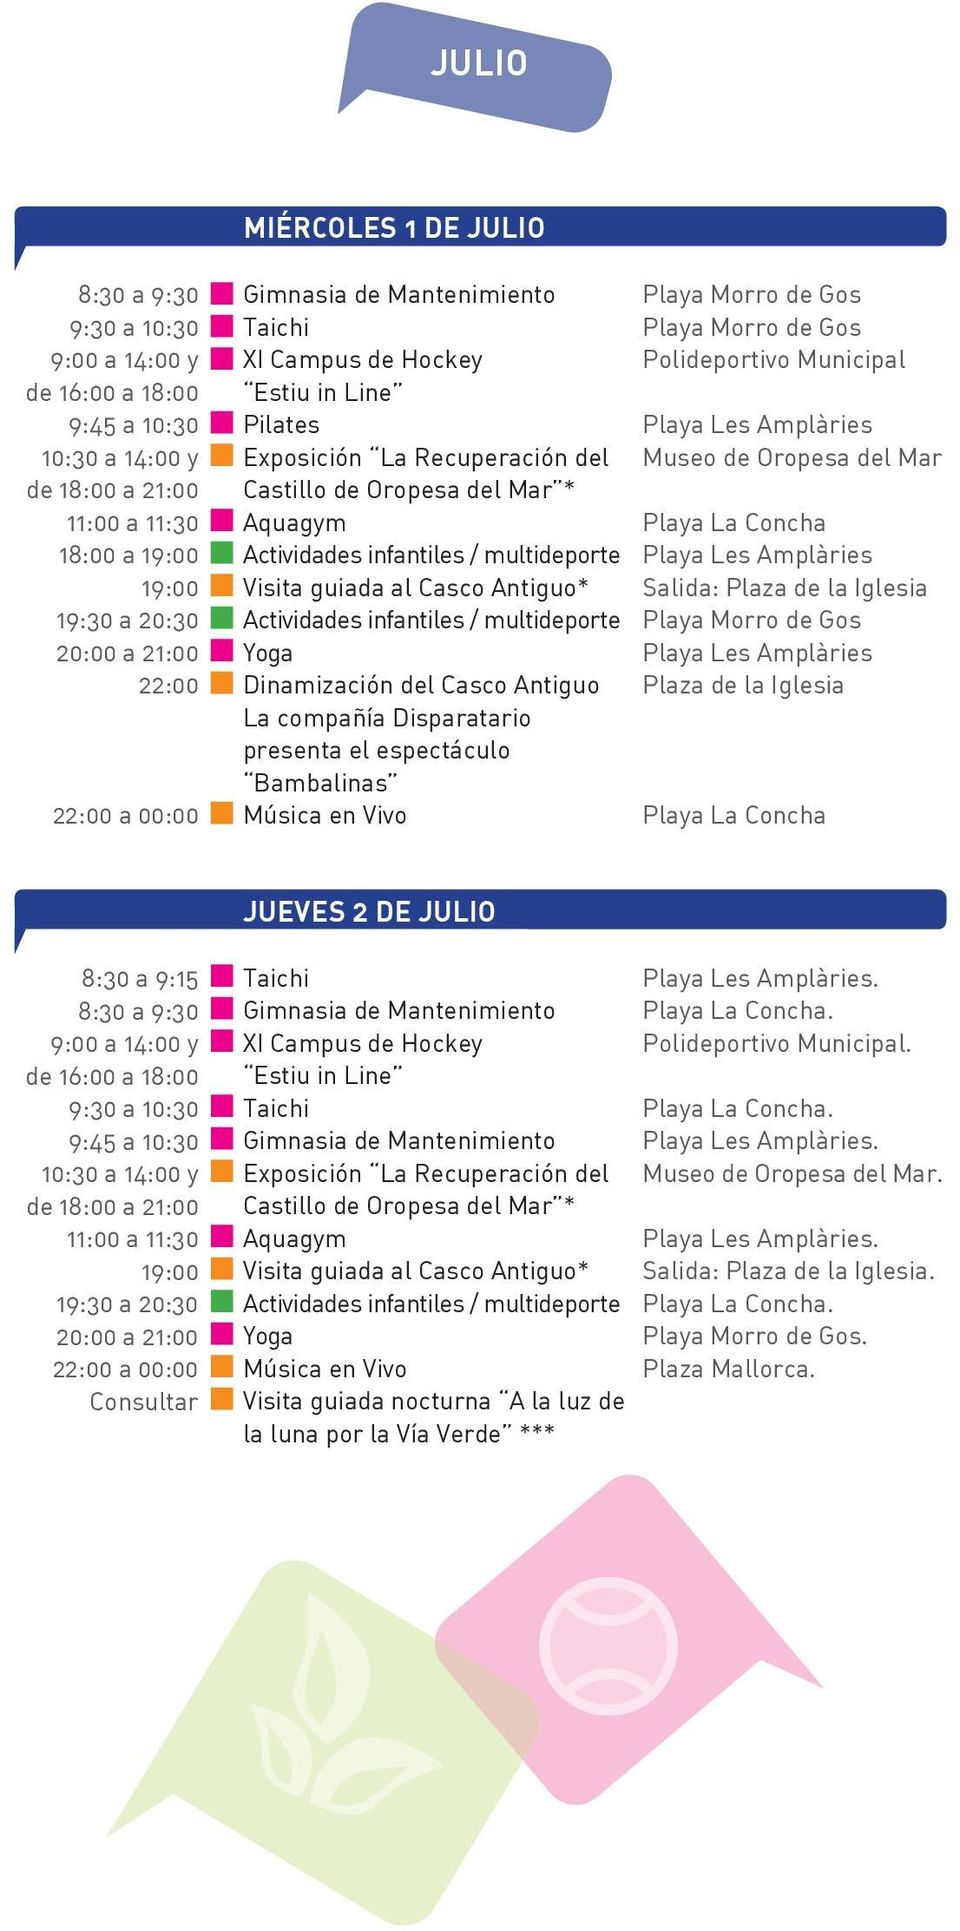 Polideportivo Municipal JUEVES 2 DE JULIO 9:00 a 14:00 y de 16:00 a 18:00 Consultar XI Campus de Hockey